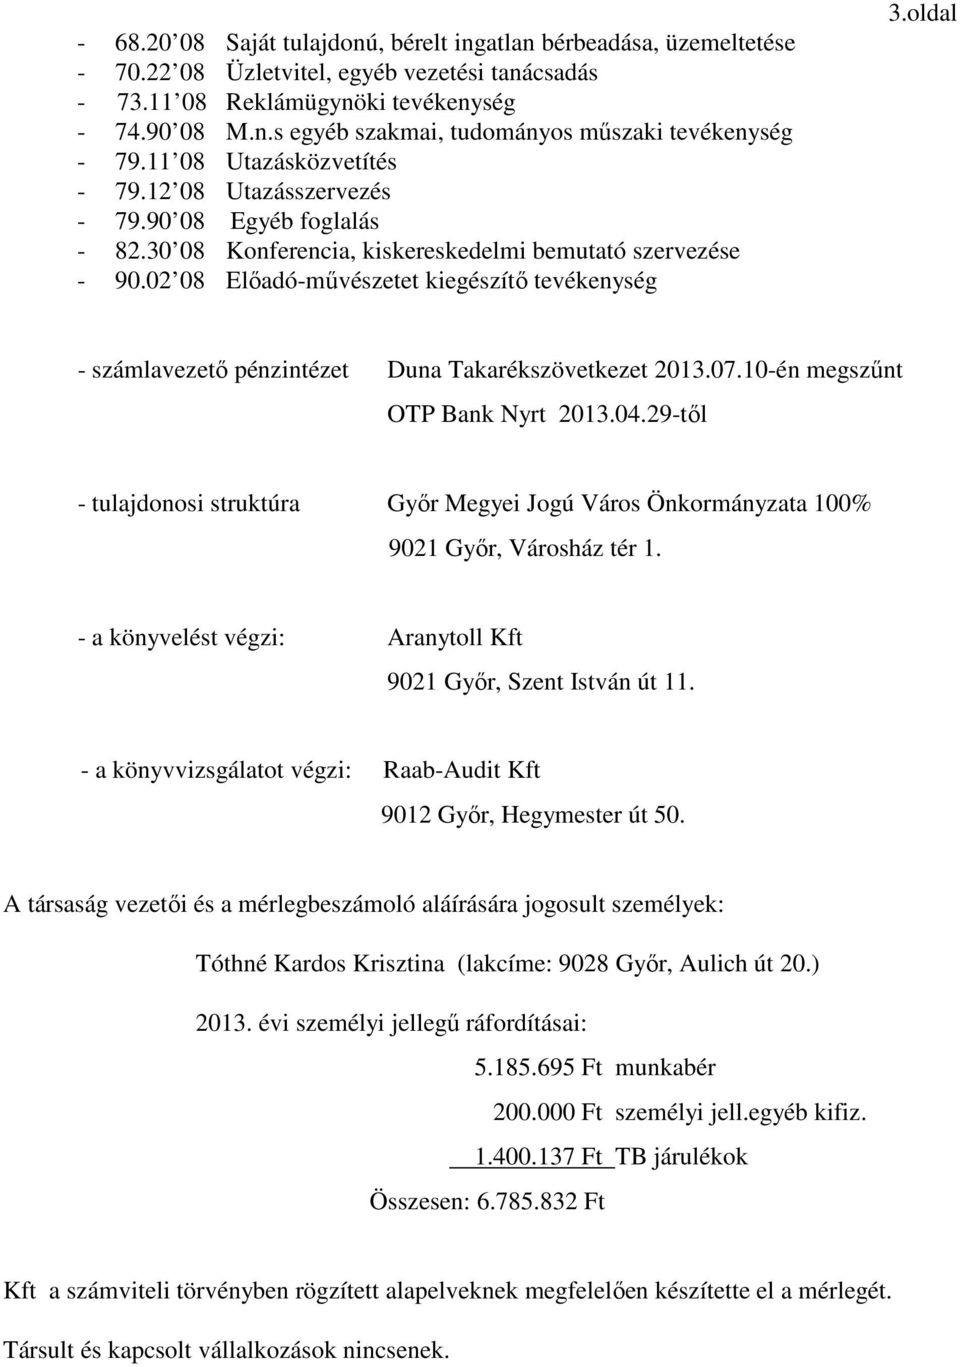 oldal - számlavezető pénzintézet Duna Takarékszövetkezet 2013.07.10-én megszűnt OTP Bank Nyrt 2013.04.